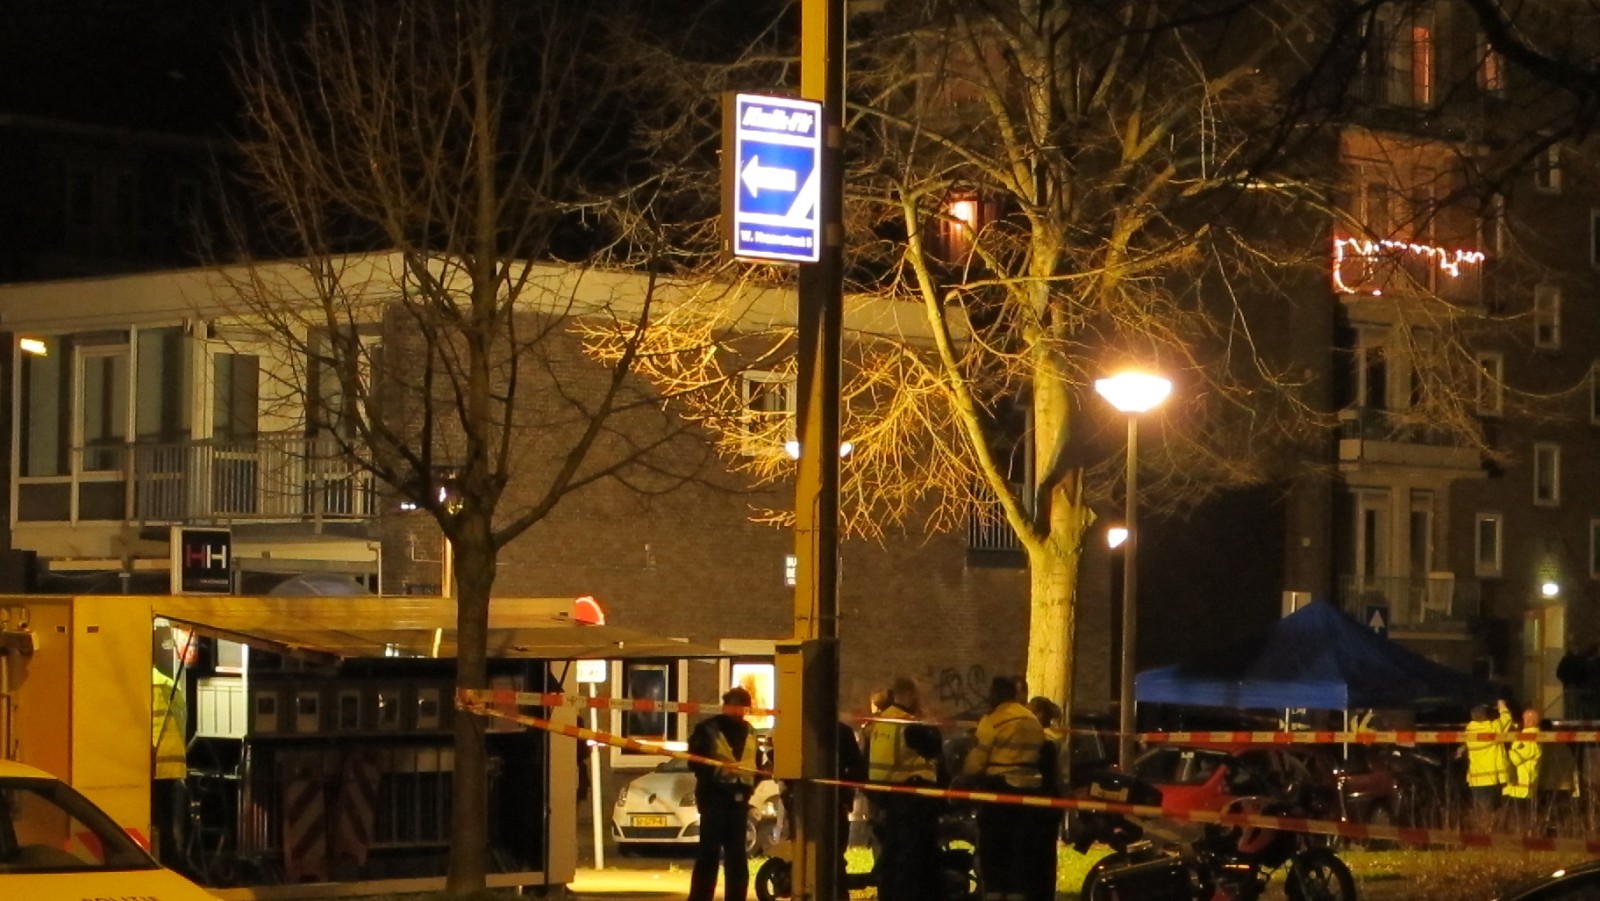 Update: Slachtoffer schietpartij in Slotermeer in ziekenhuis overleden